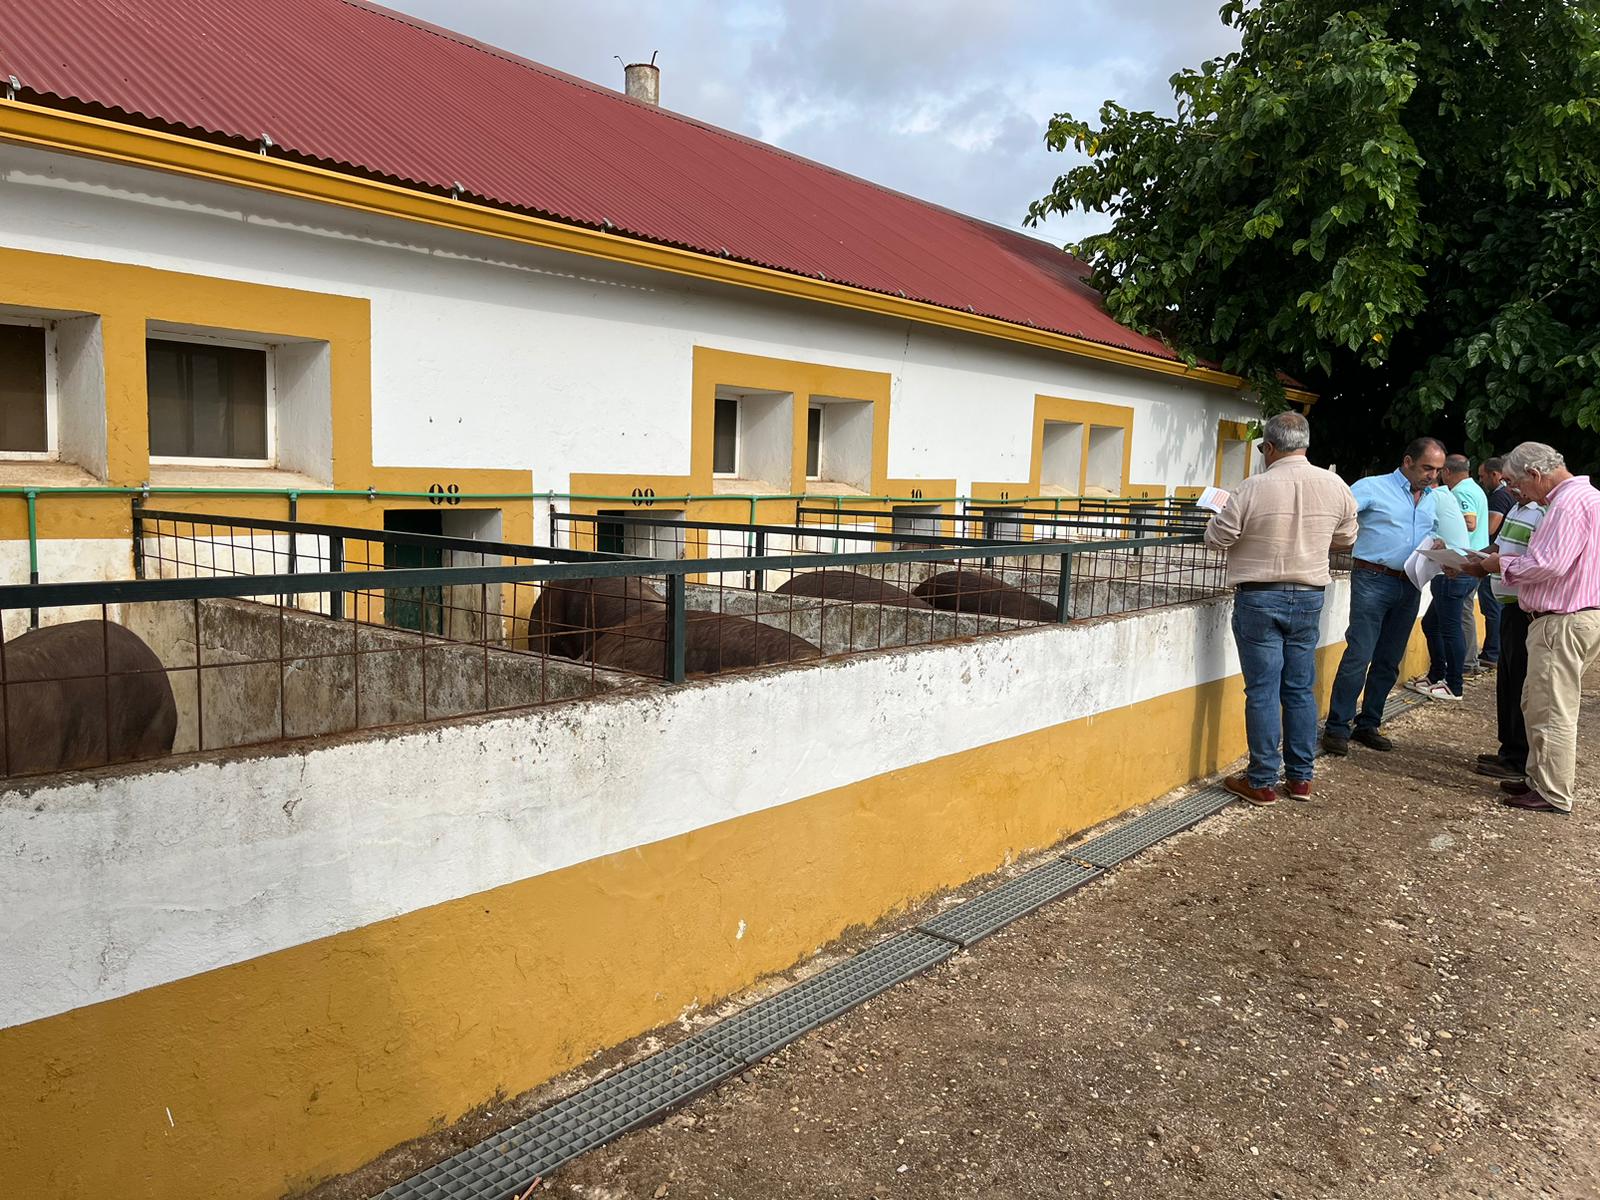 Image 0 of article El CENSYRA organiza una nueva subasta de ganado porcino raza Duroc el próximo 20 de febrero